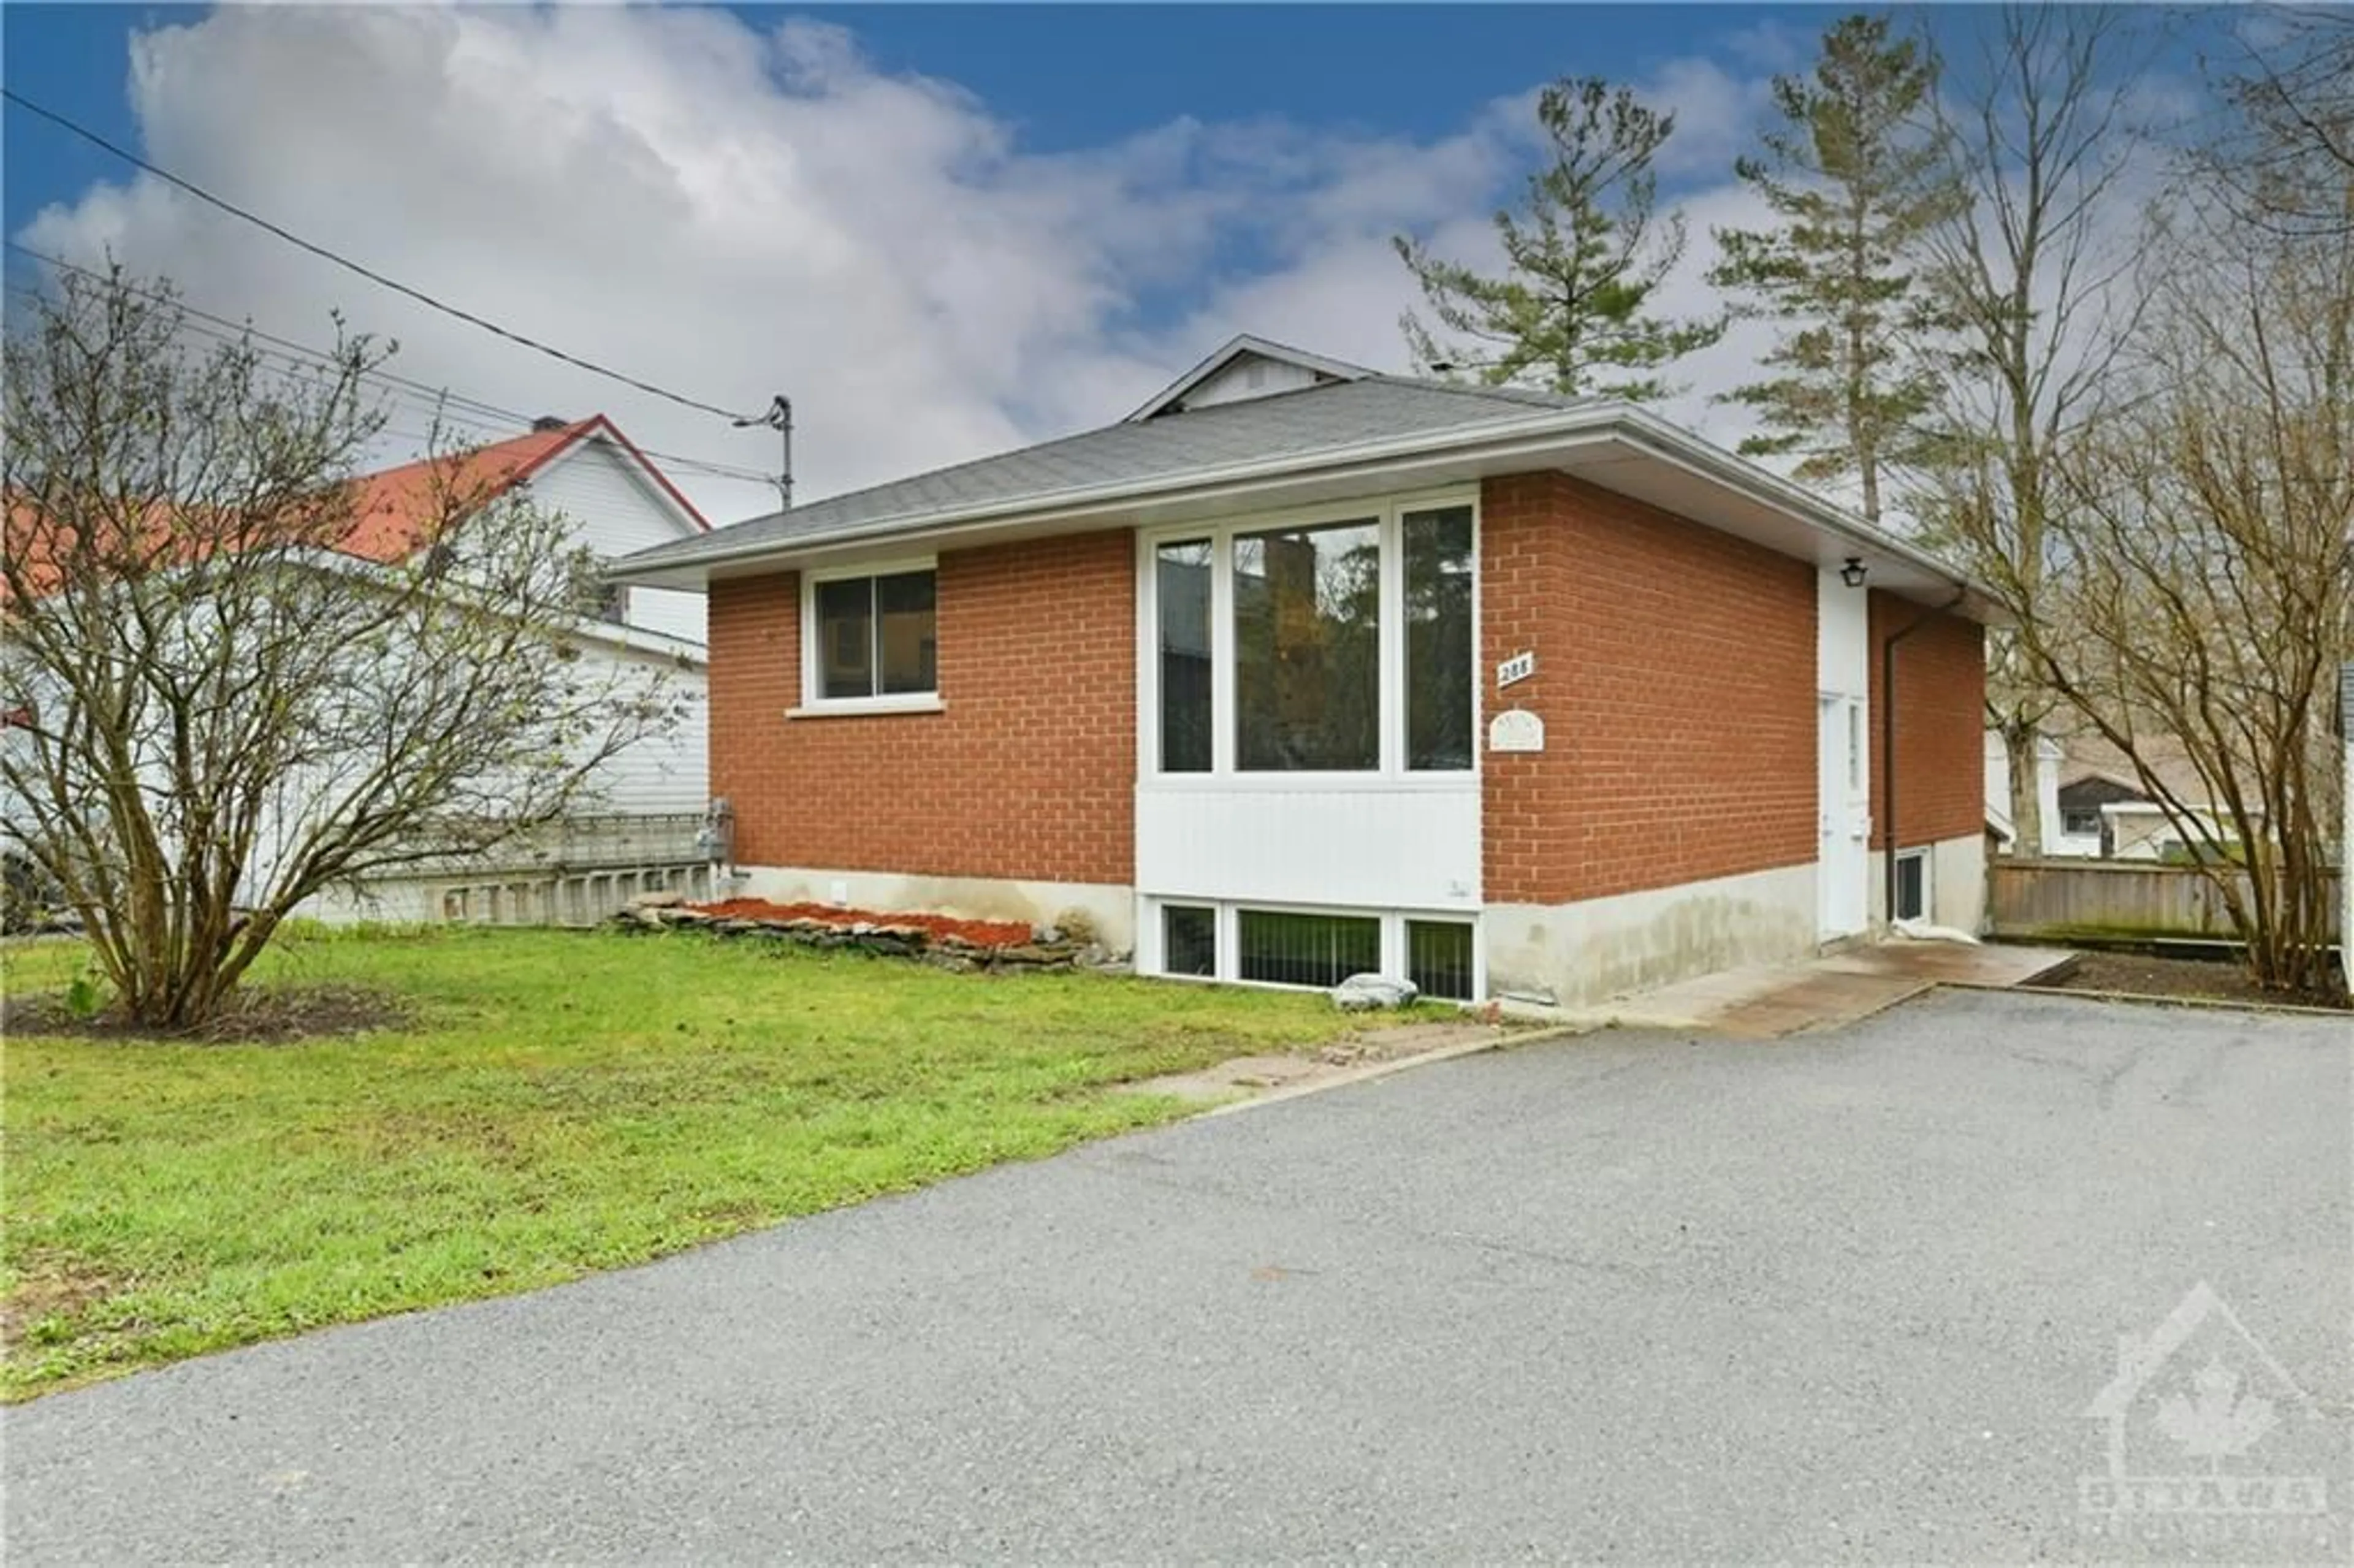 Home with brick exterior material for 288 EDMUND St, Carleton Place Ontario K7C 3E9